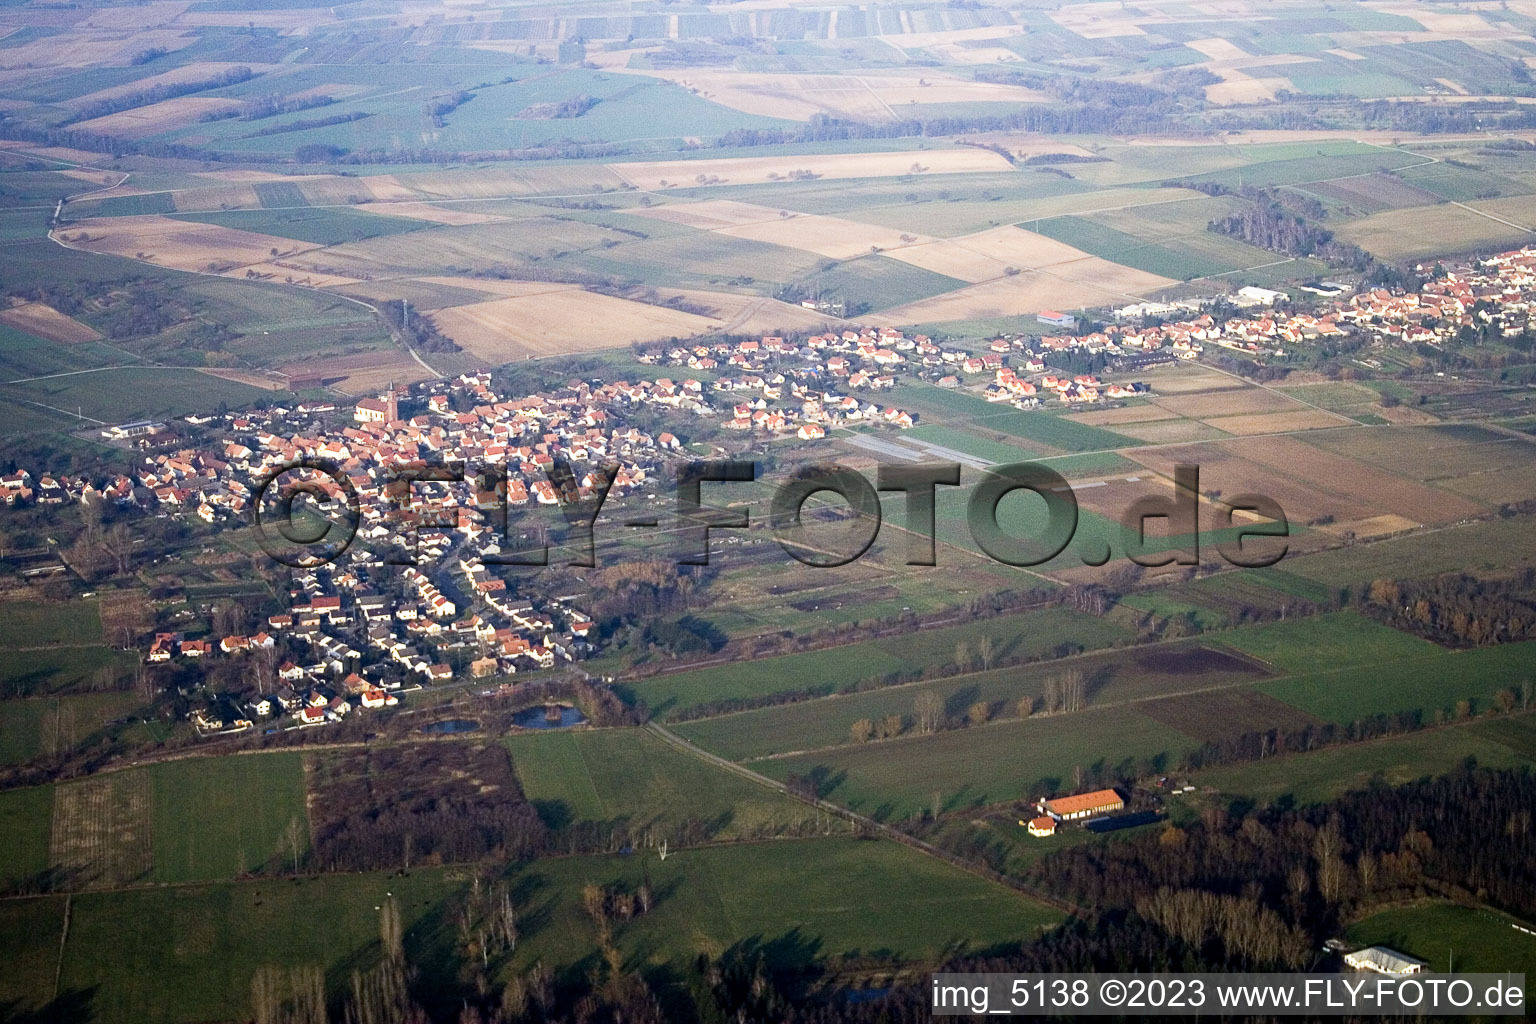 Kapsweyer dans le département Rhénanie-Palatinat, Allemagne vu d'un drone